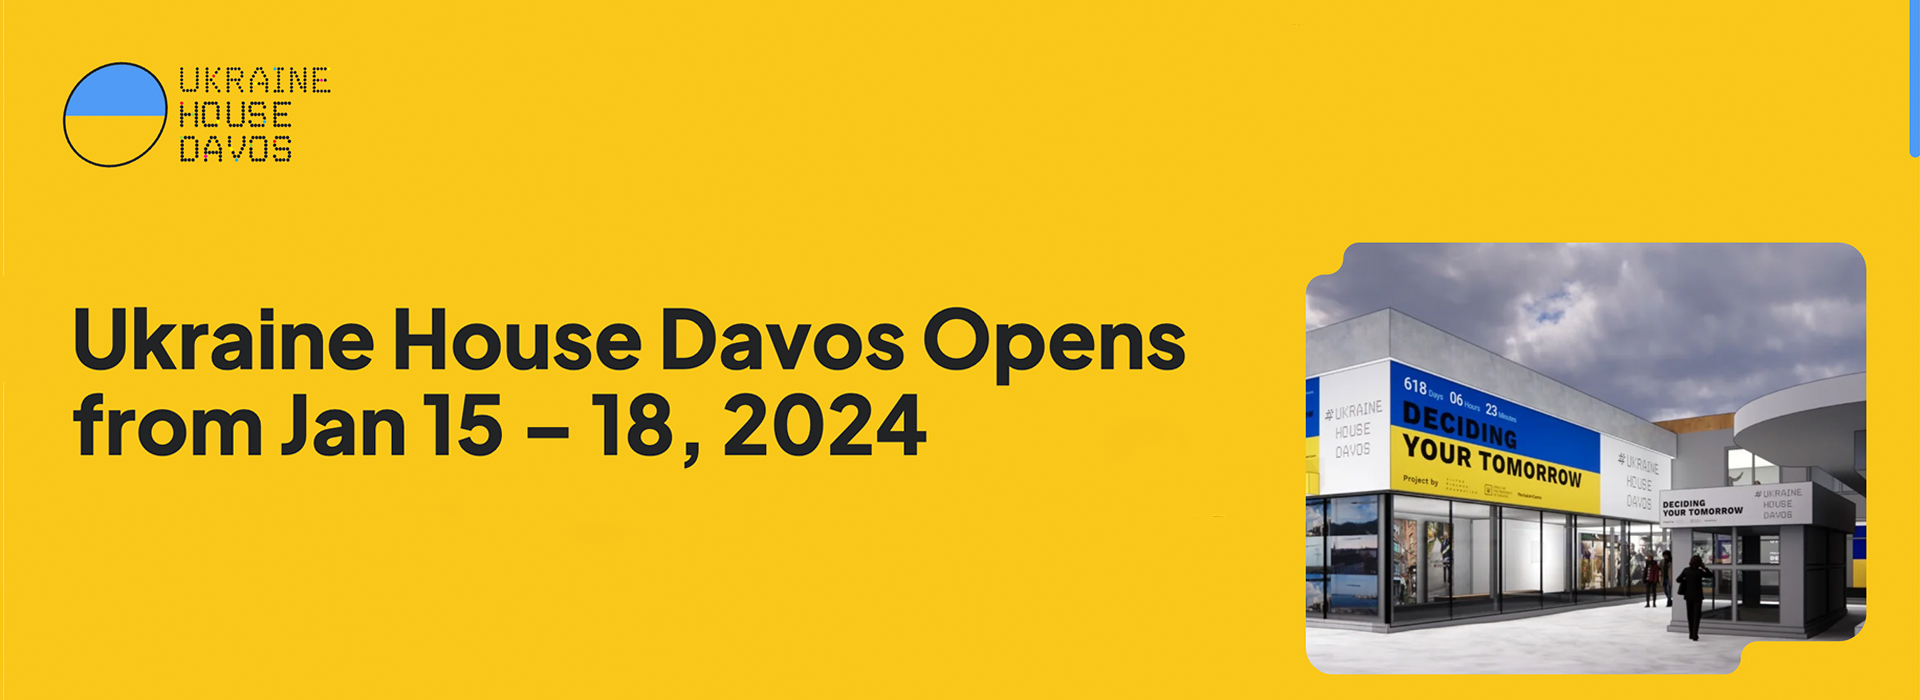 Ukraine House Davos Opens Doors From Jan 15 – 18, 2024